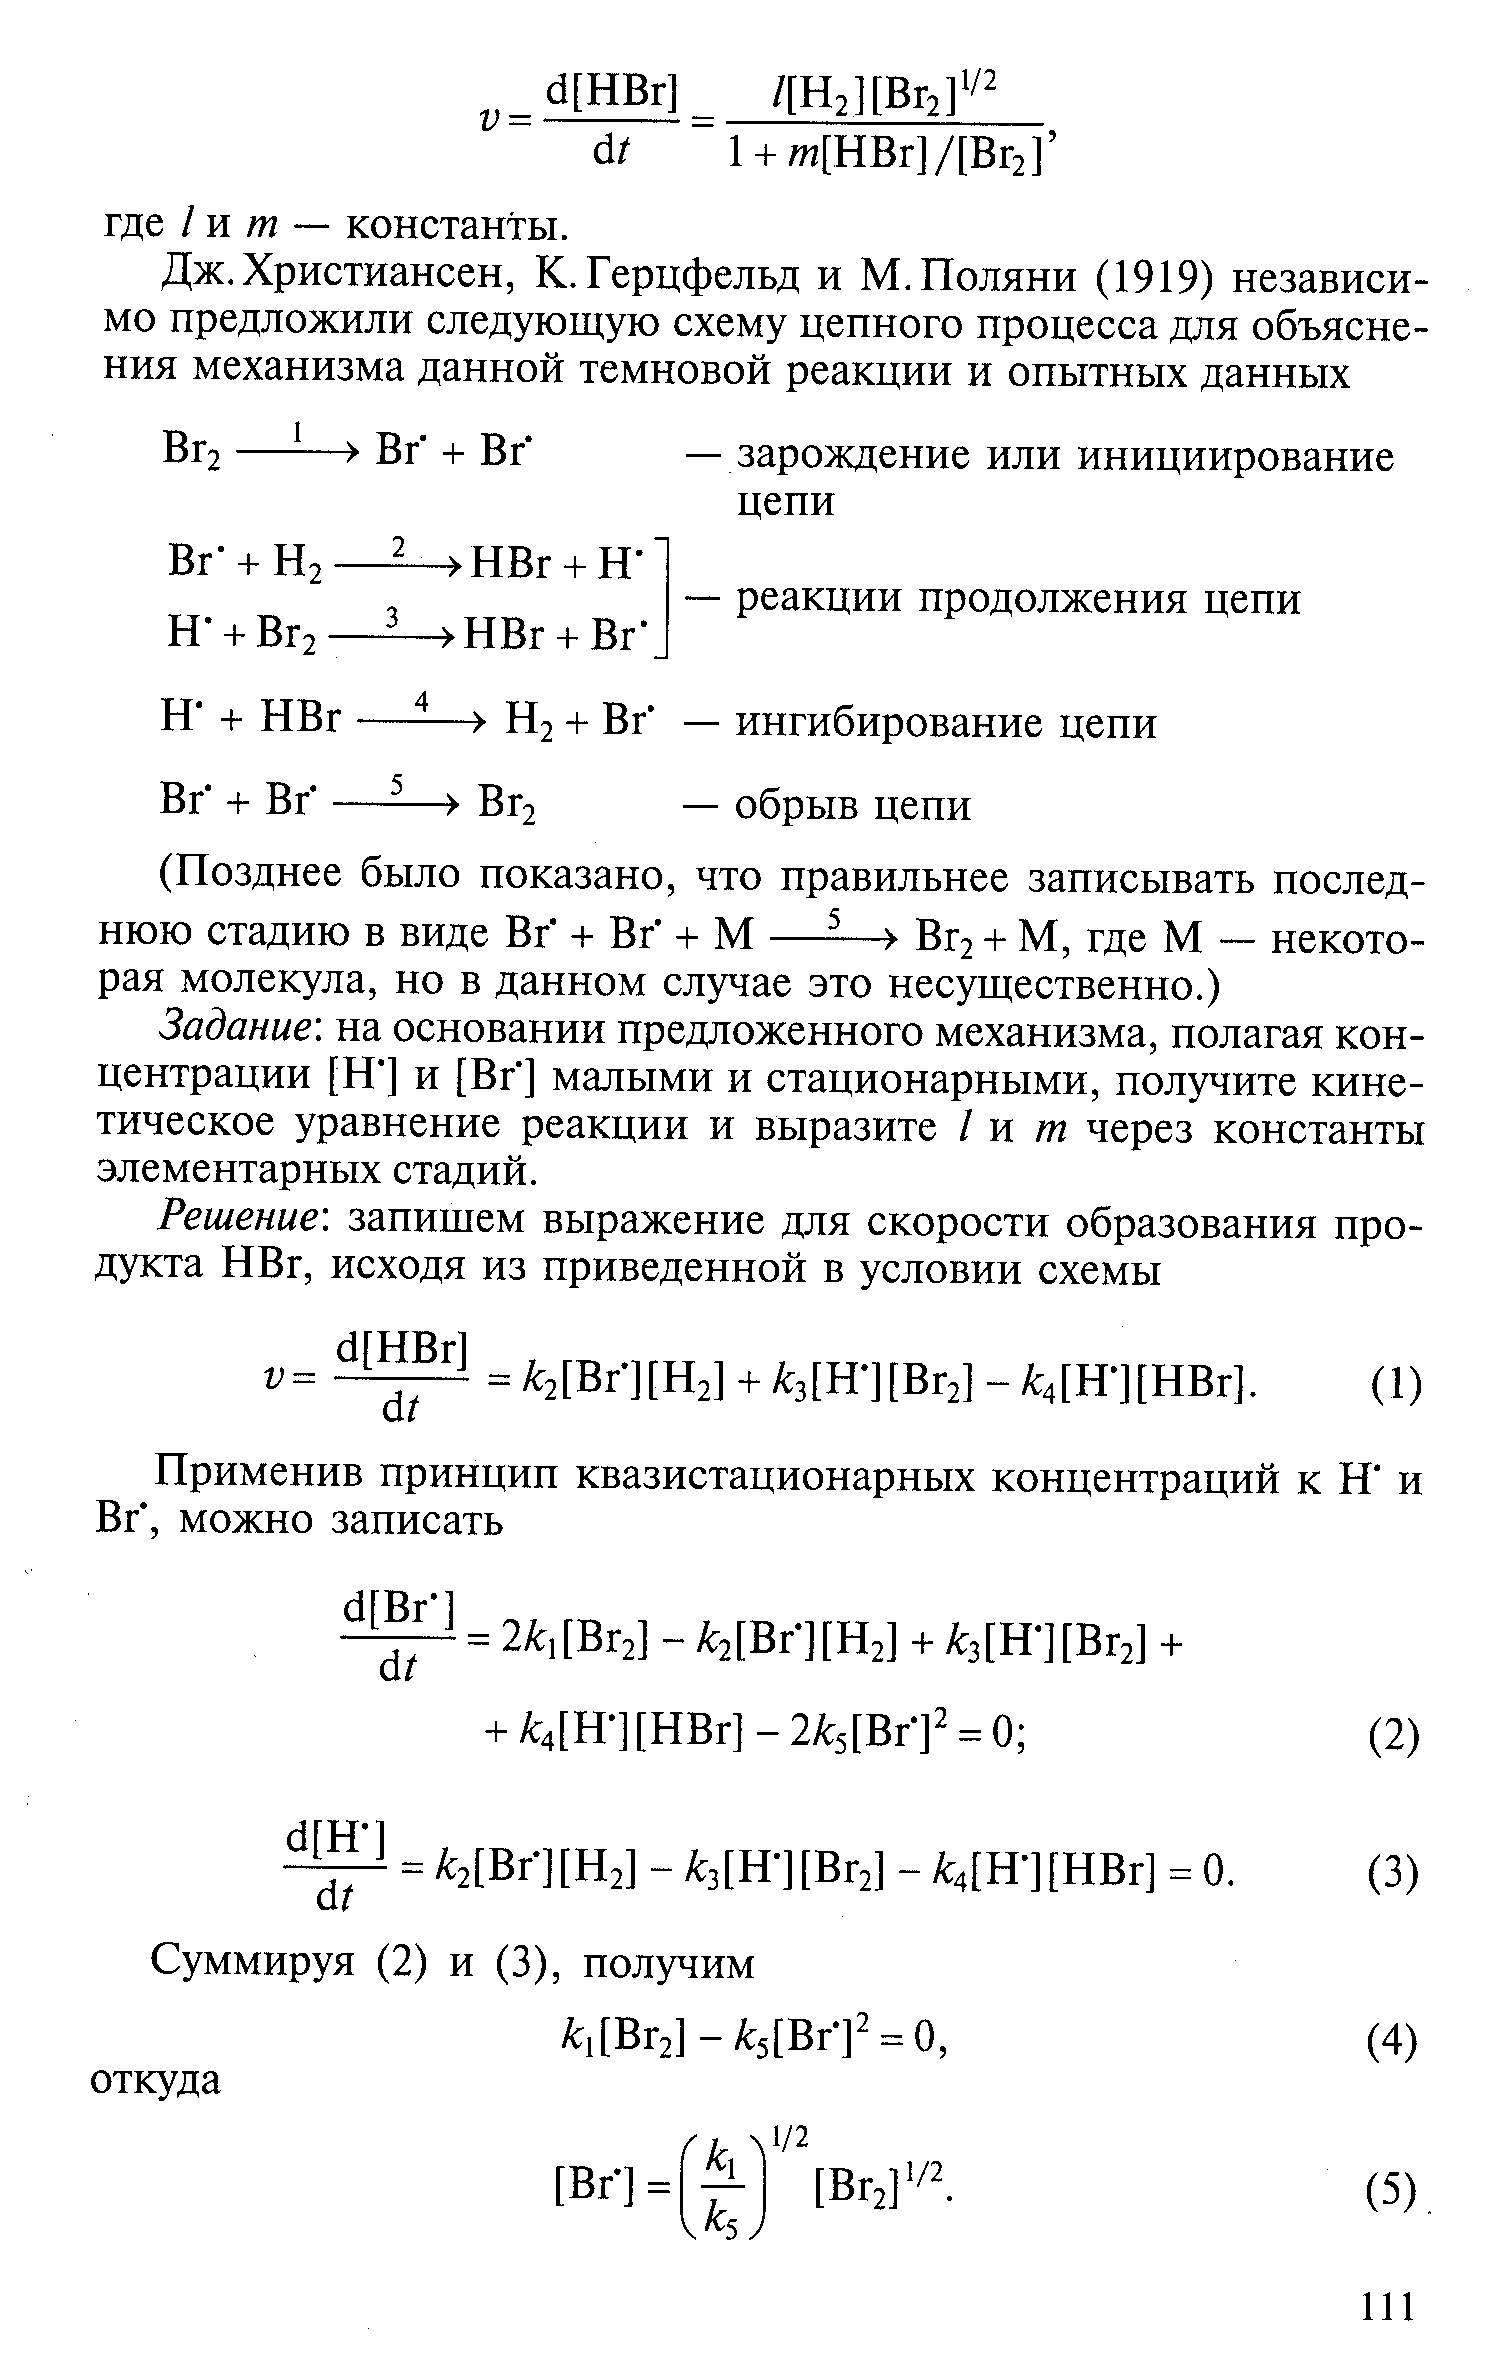 Задание на основании предложенного механизма, полагая концентрации [Н ] и [Вг] малыми и стационарными, получите кинетическое уравнение реакции и выразите I и т через константы элементарных стадий.